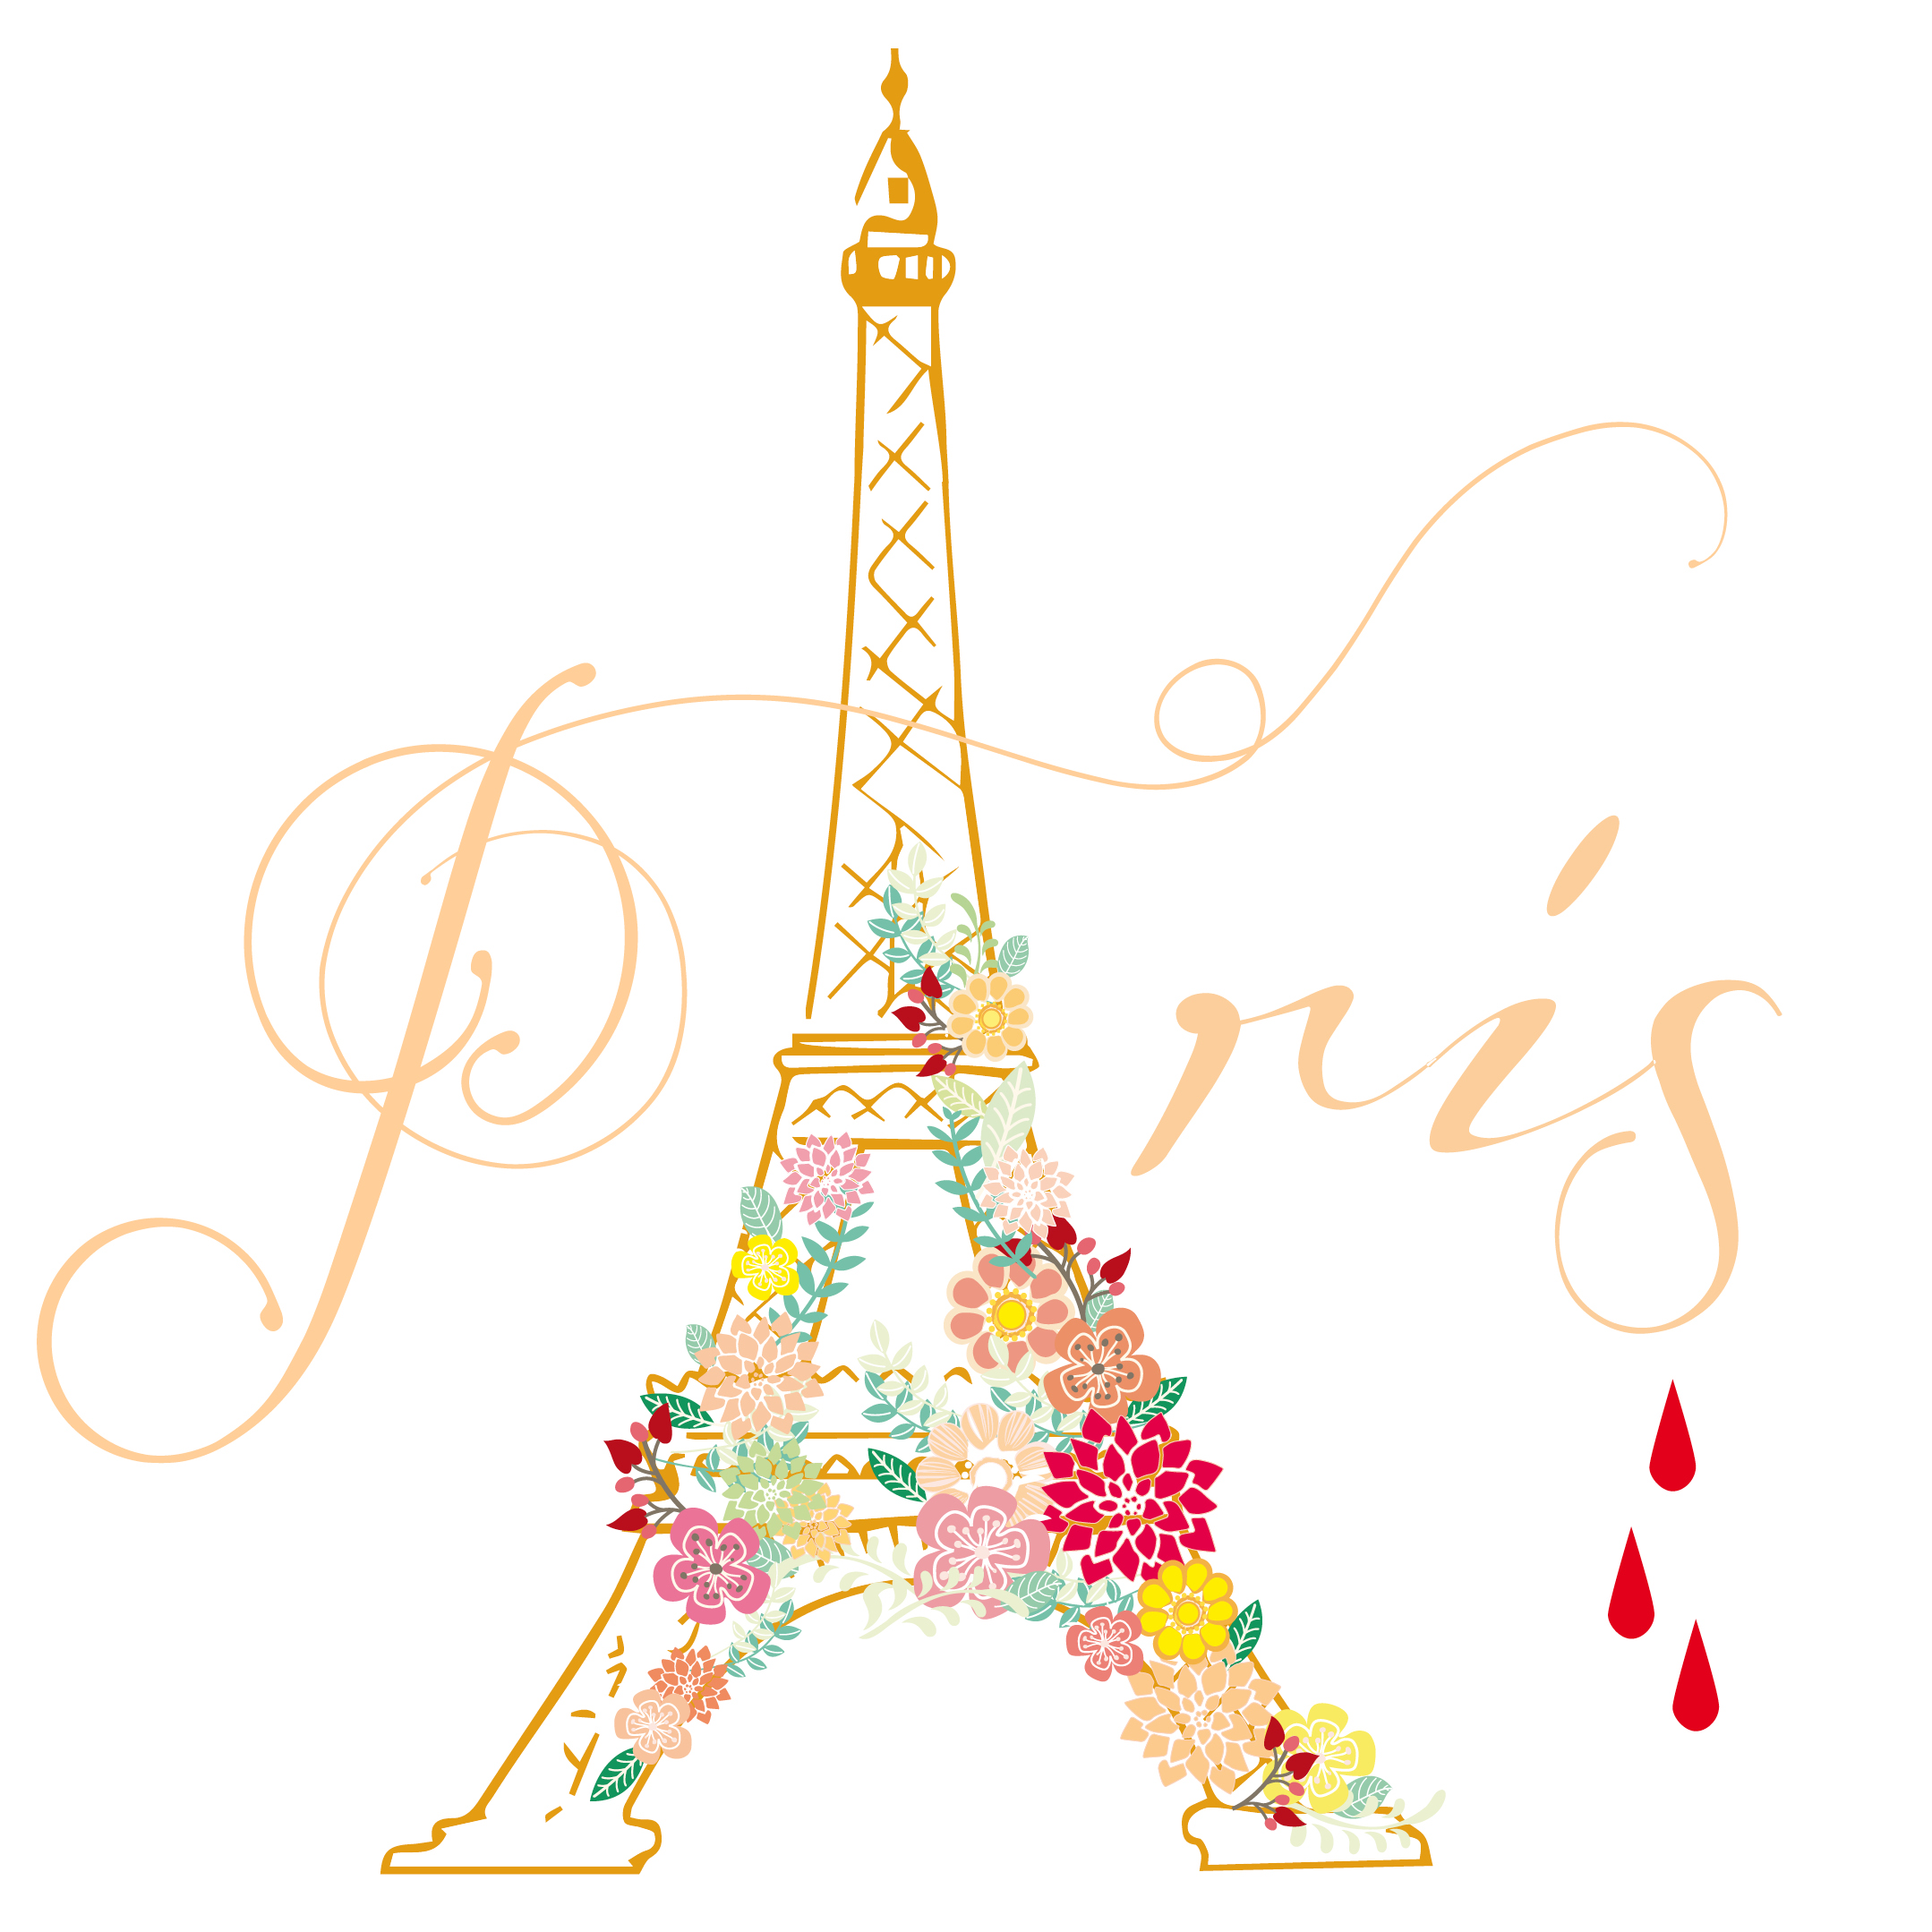 Pray for paris